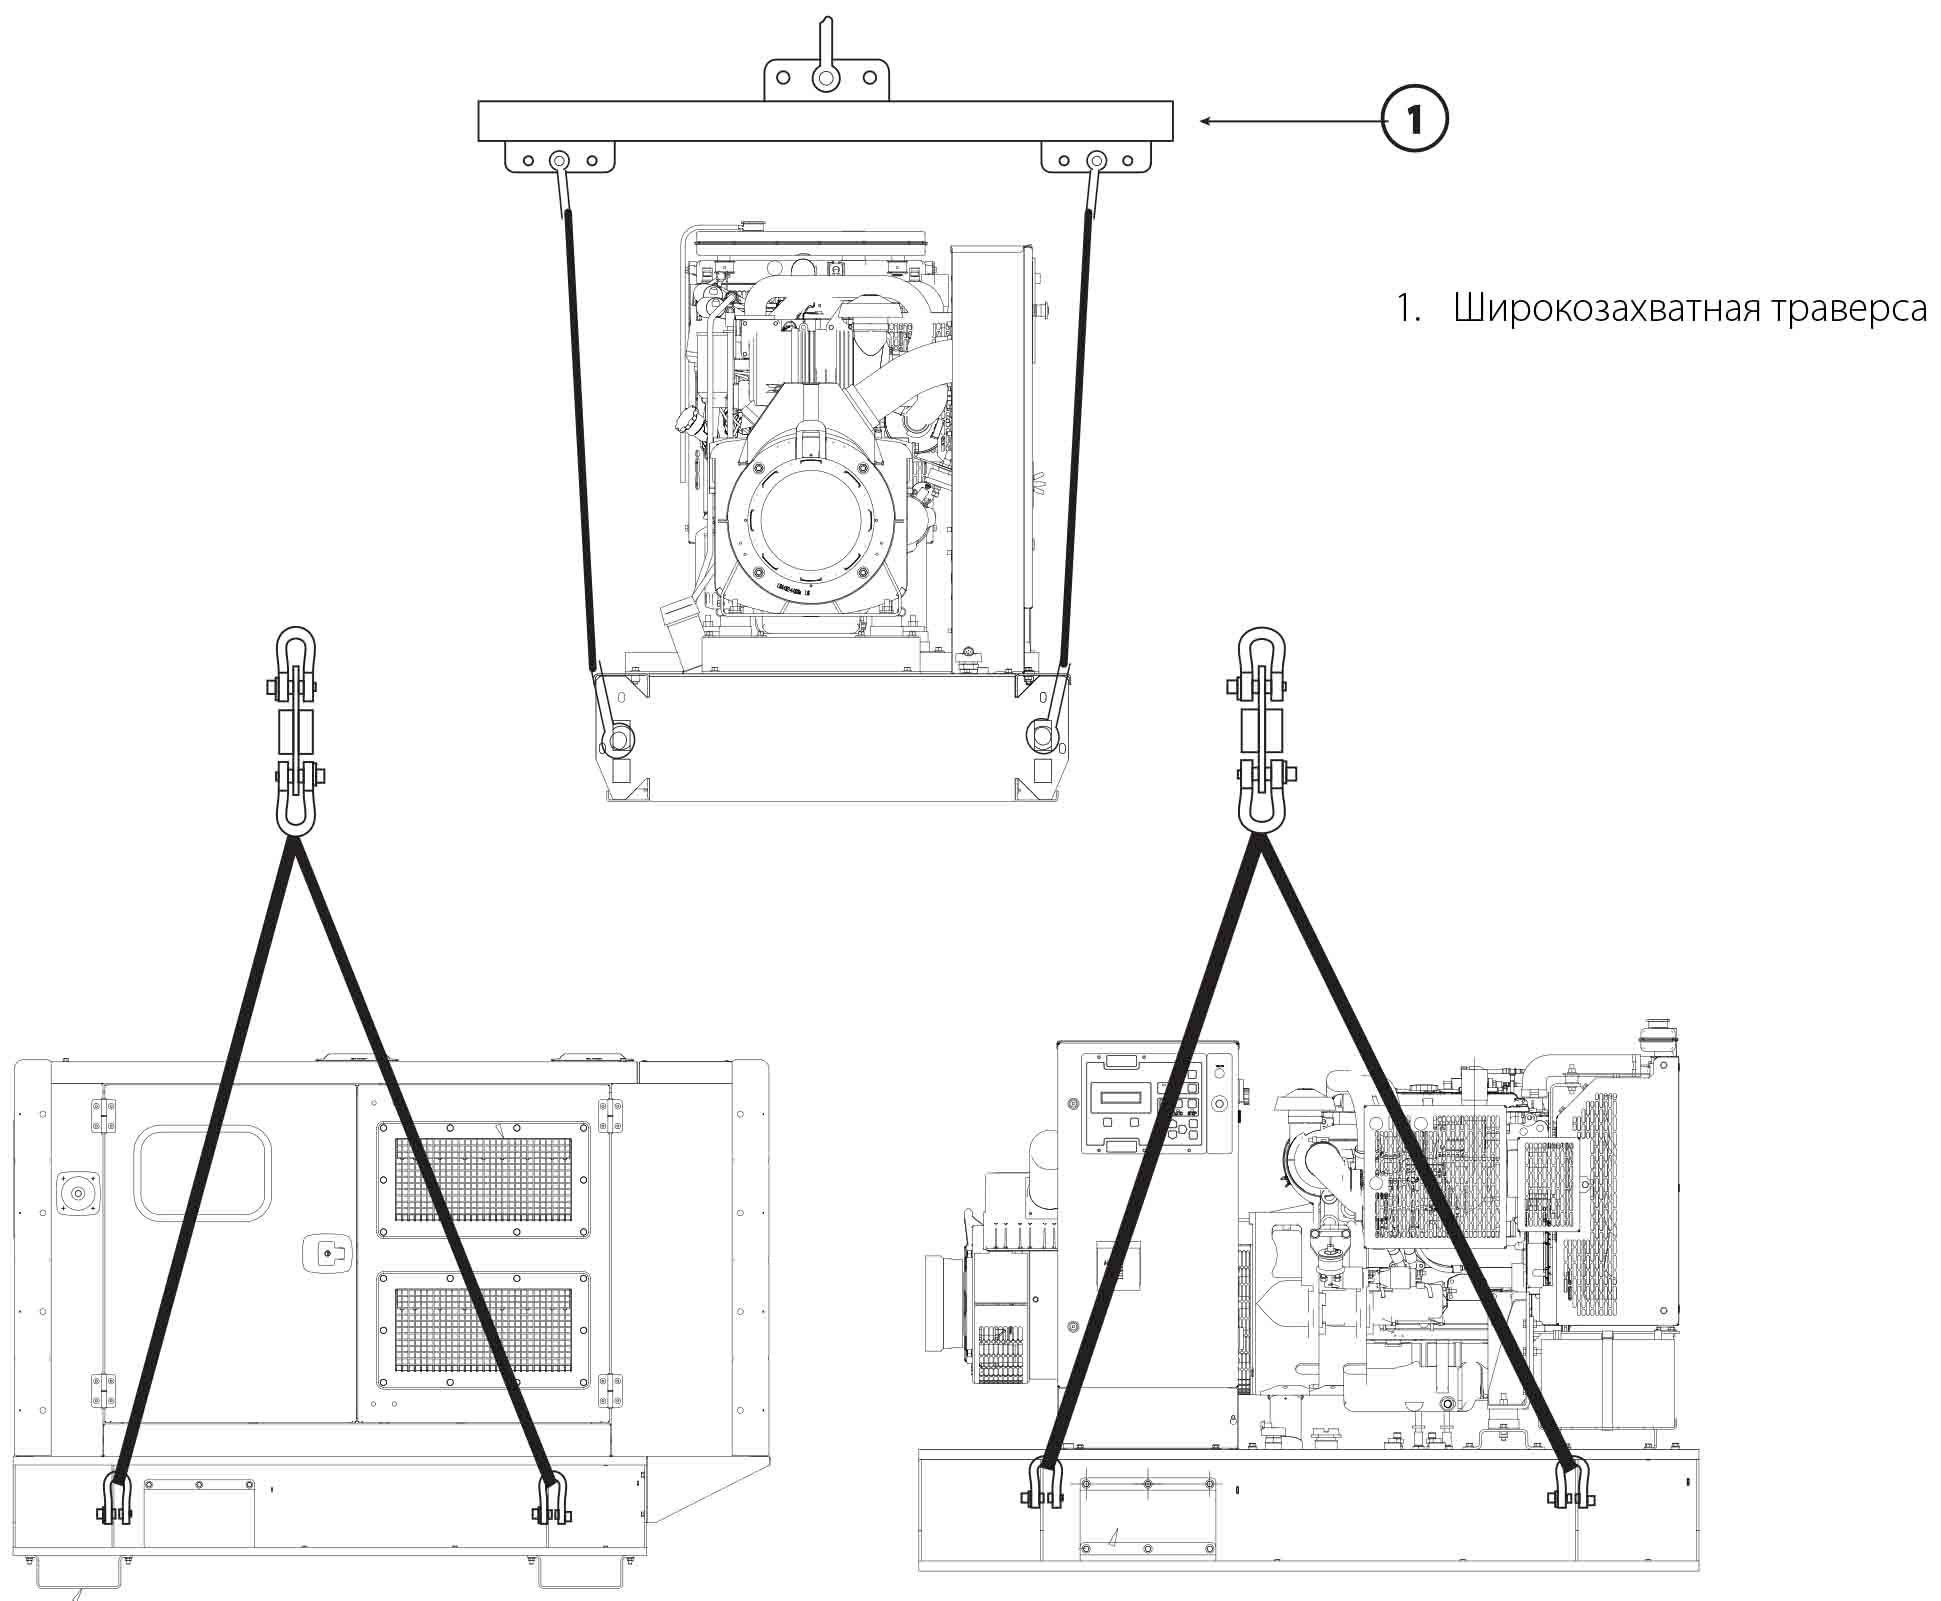 Дизельные генераторы - правильная схема подъема (открытого и закрытого исполнения)